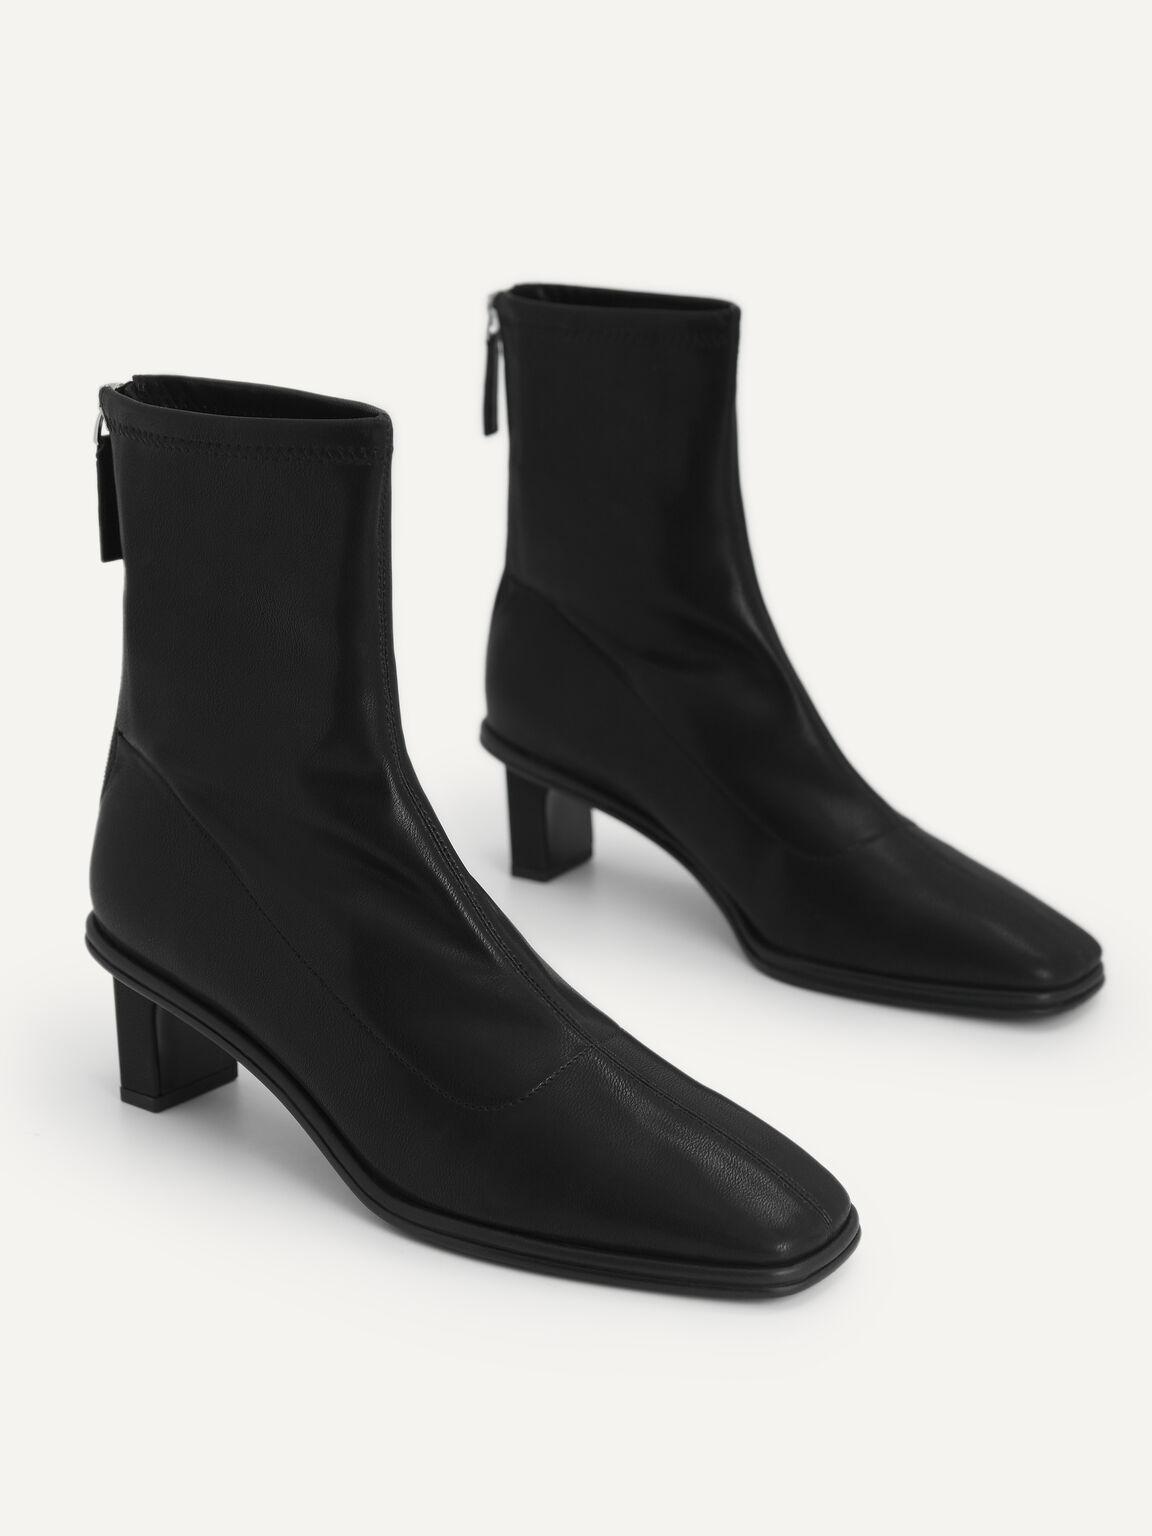 Heeled Ankle Boots, Black, hi-res